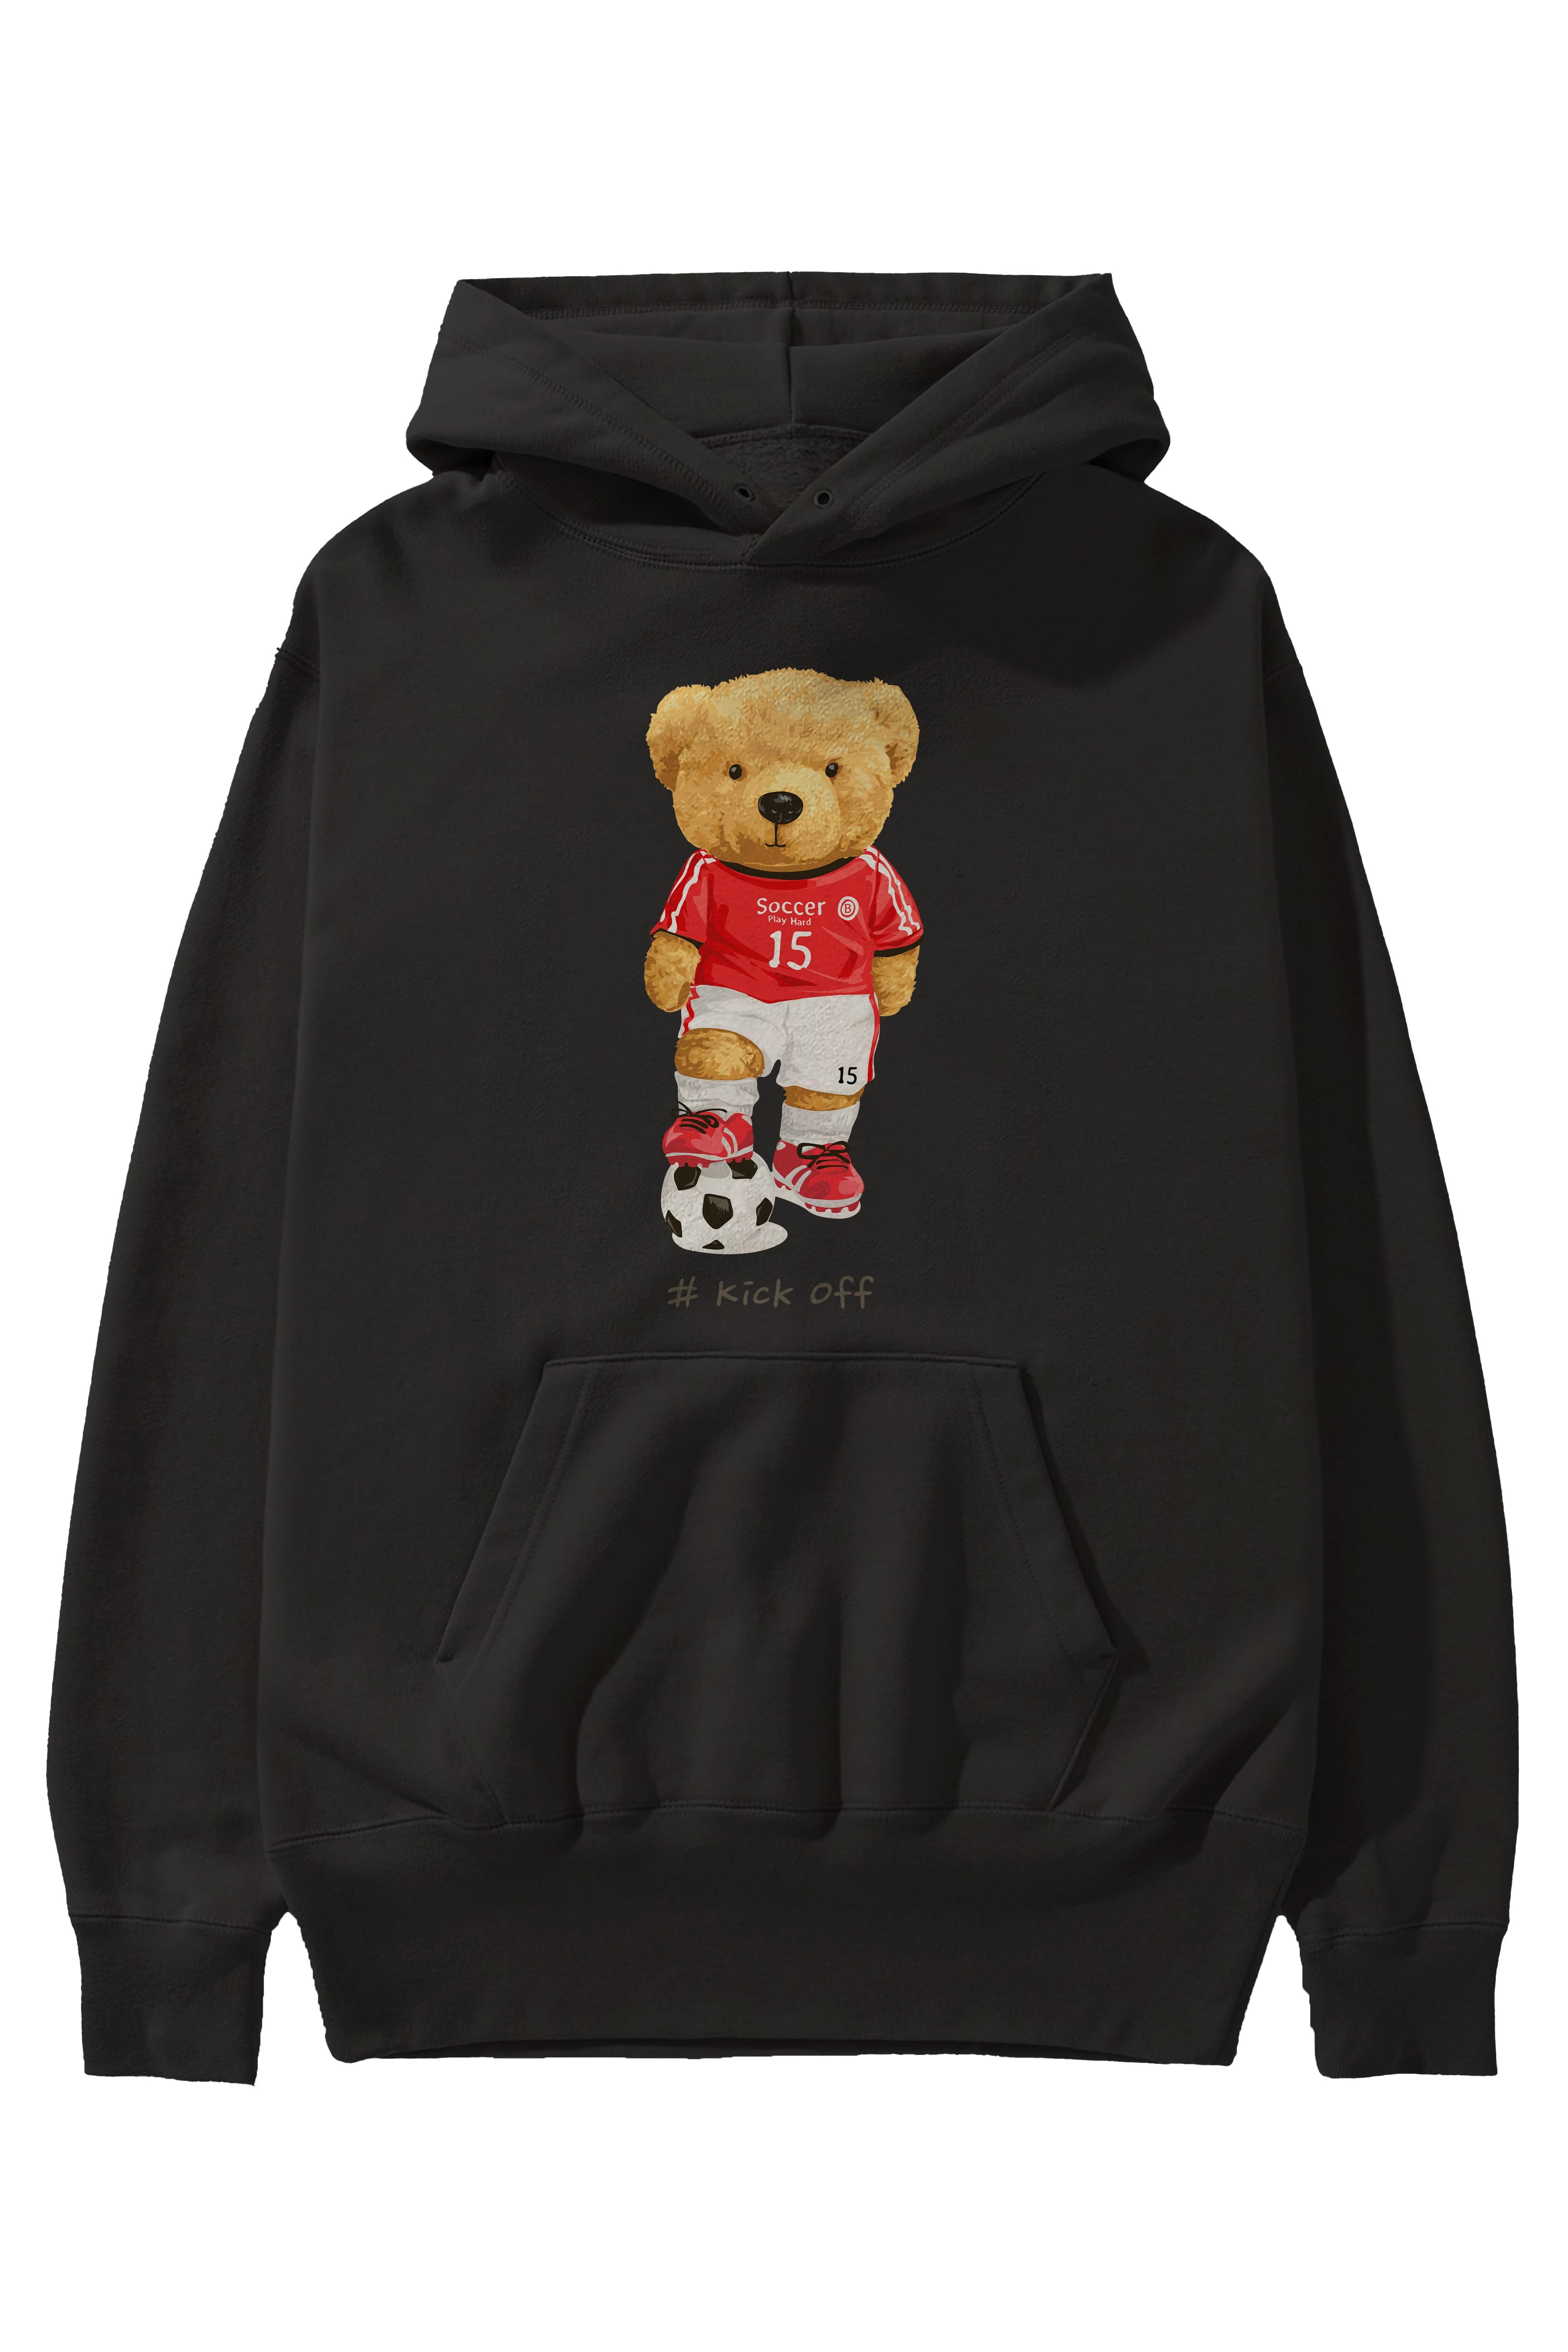 Teddy Bear Kick Off Ön Baskılı Hoodie Oversize Kapüşonlu Sweatshirt Erkek Kadın Unisex